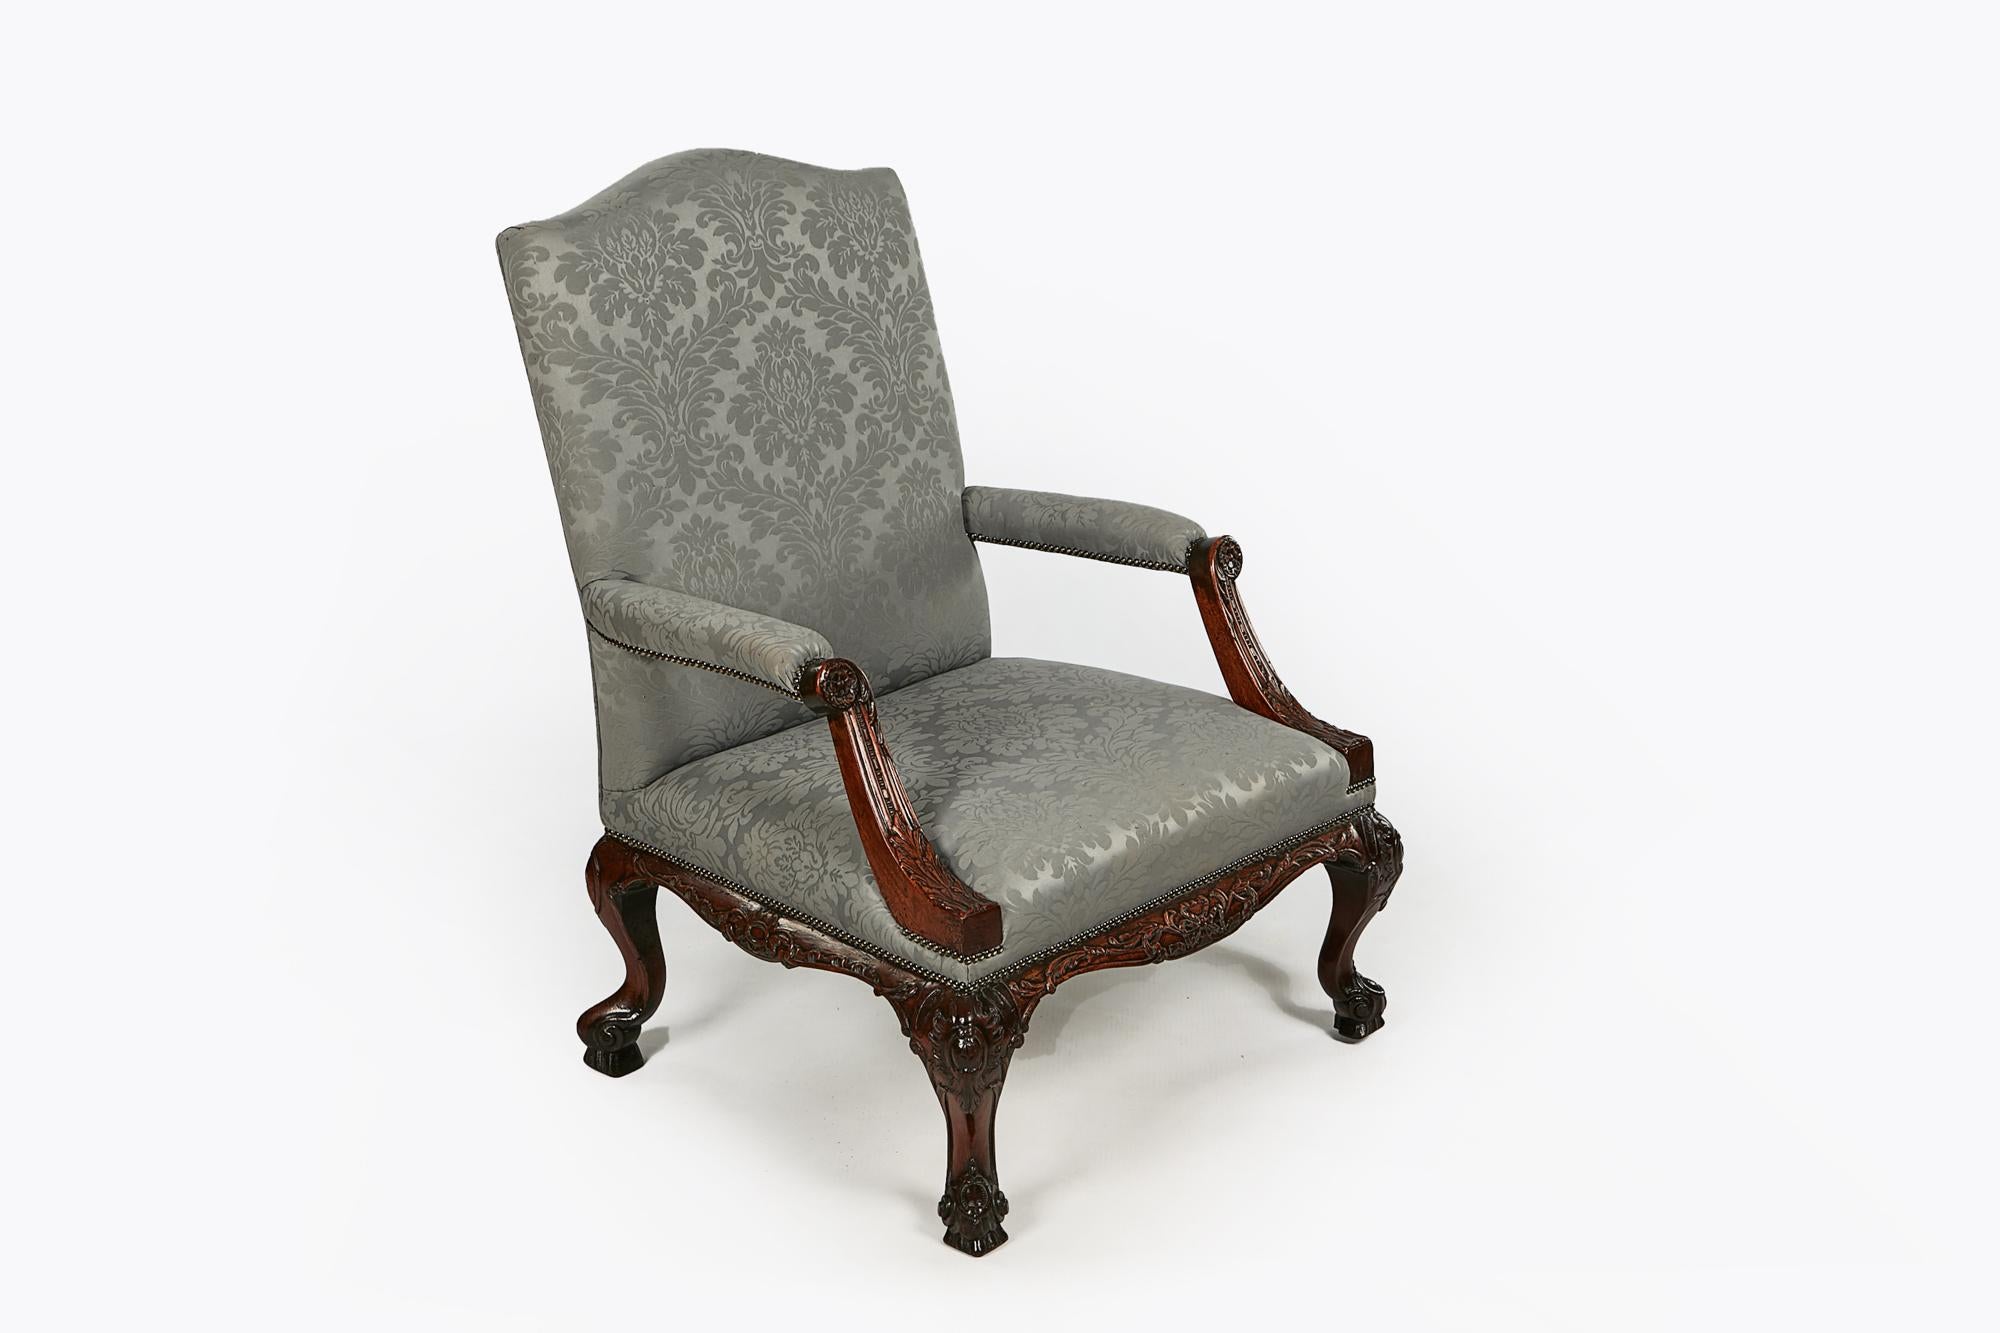 Gainsborough-Sessel aus dem 18. Jh. in Chippendale-Manier mit geschnitzter Schürze, die von einem Cabriole-Bein getragen wird, das mit einem C-Rollen-Motiv verziert ist und auf einem Fuß mit Akanthusblatt-Schnitzerei endet.